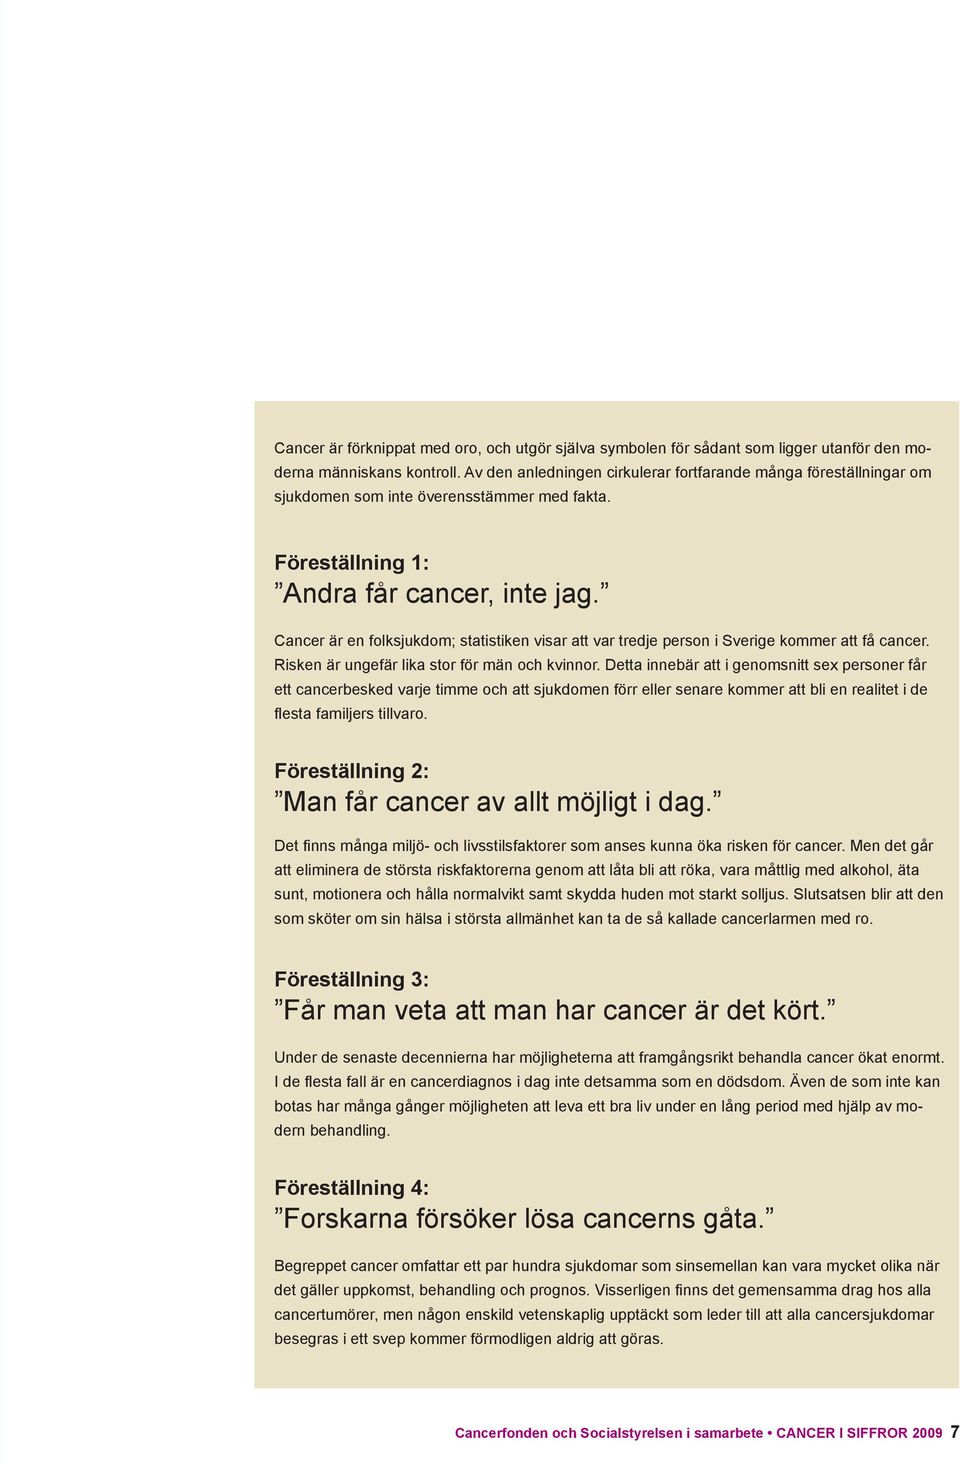 Cancer är en folksjukdom; statistiken visar att var tredje person i Sverige kommer att få cancer. Risken är ungefär lika stor för män och kvinnor.